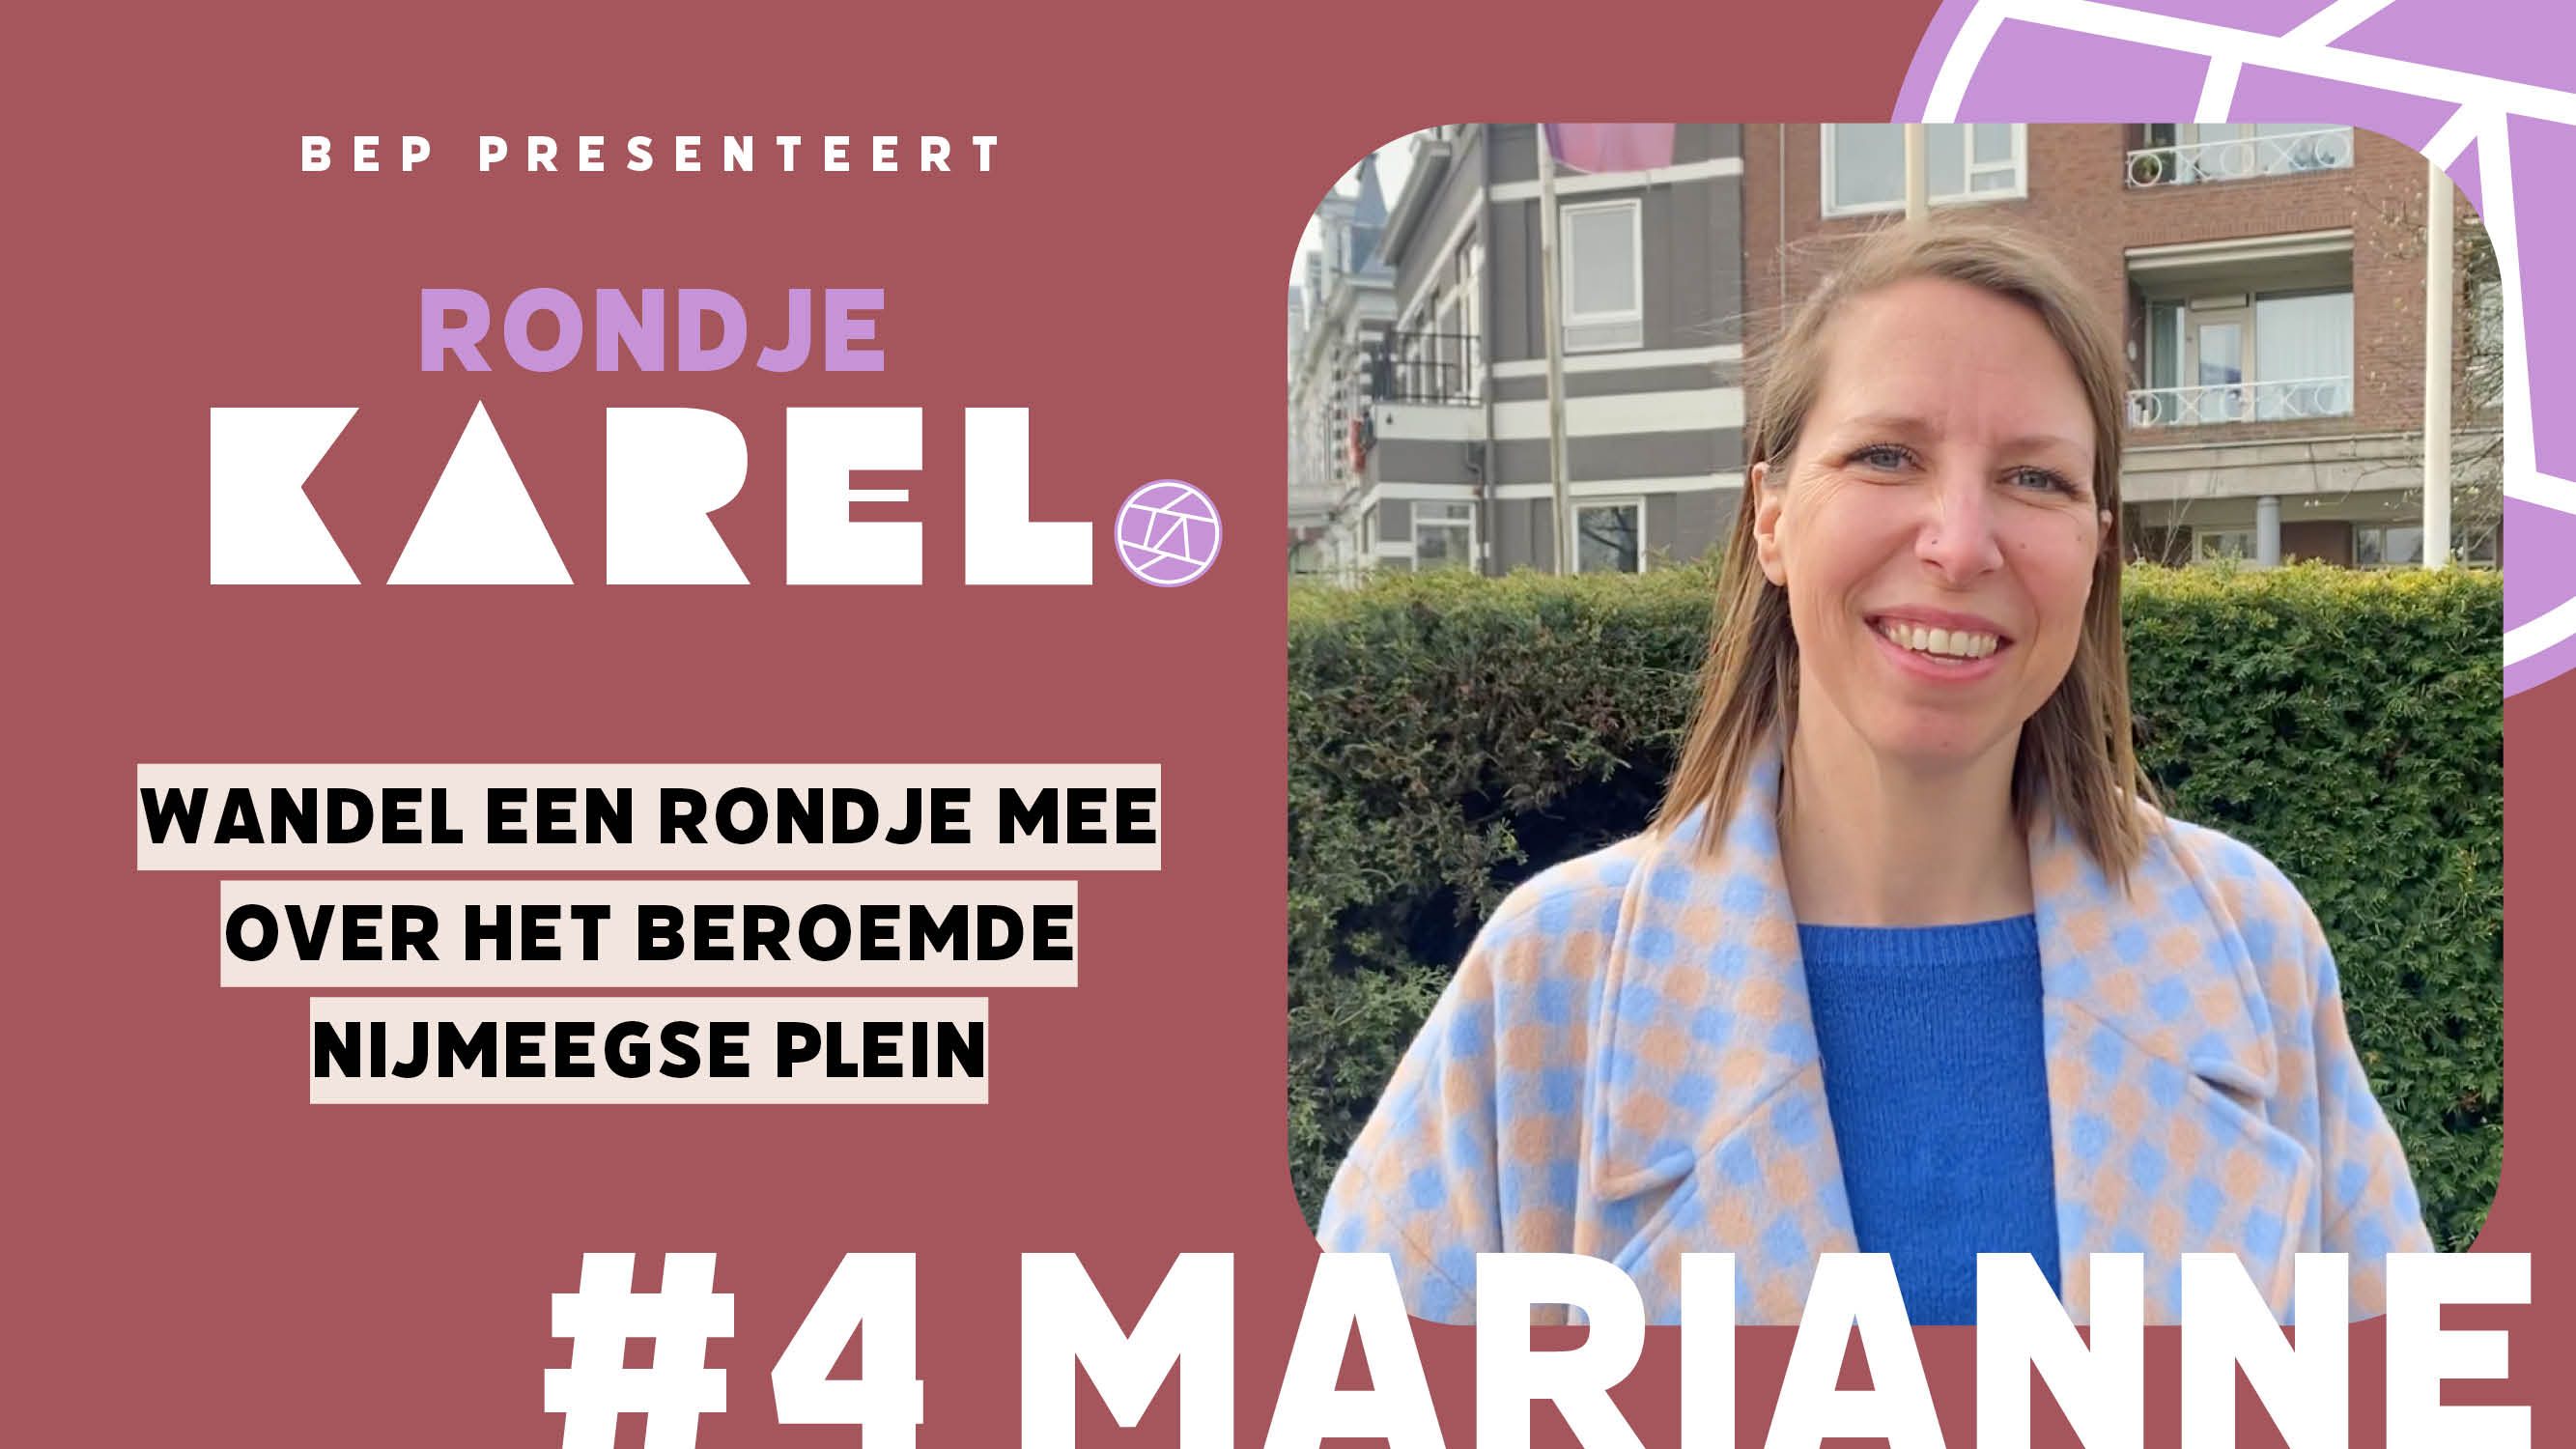 Marianne van der Walle